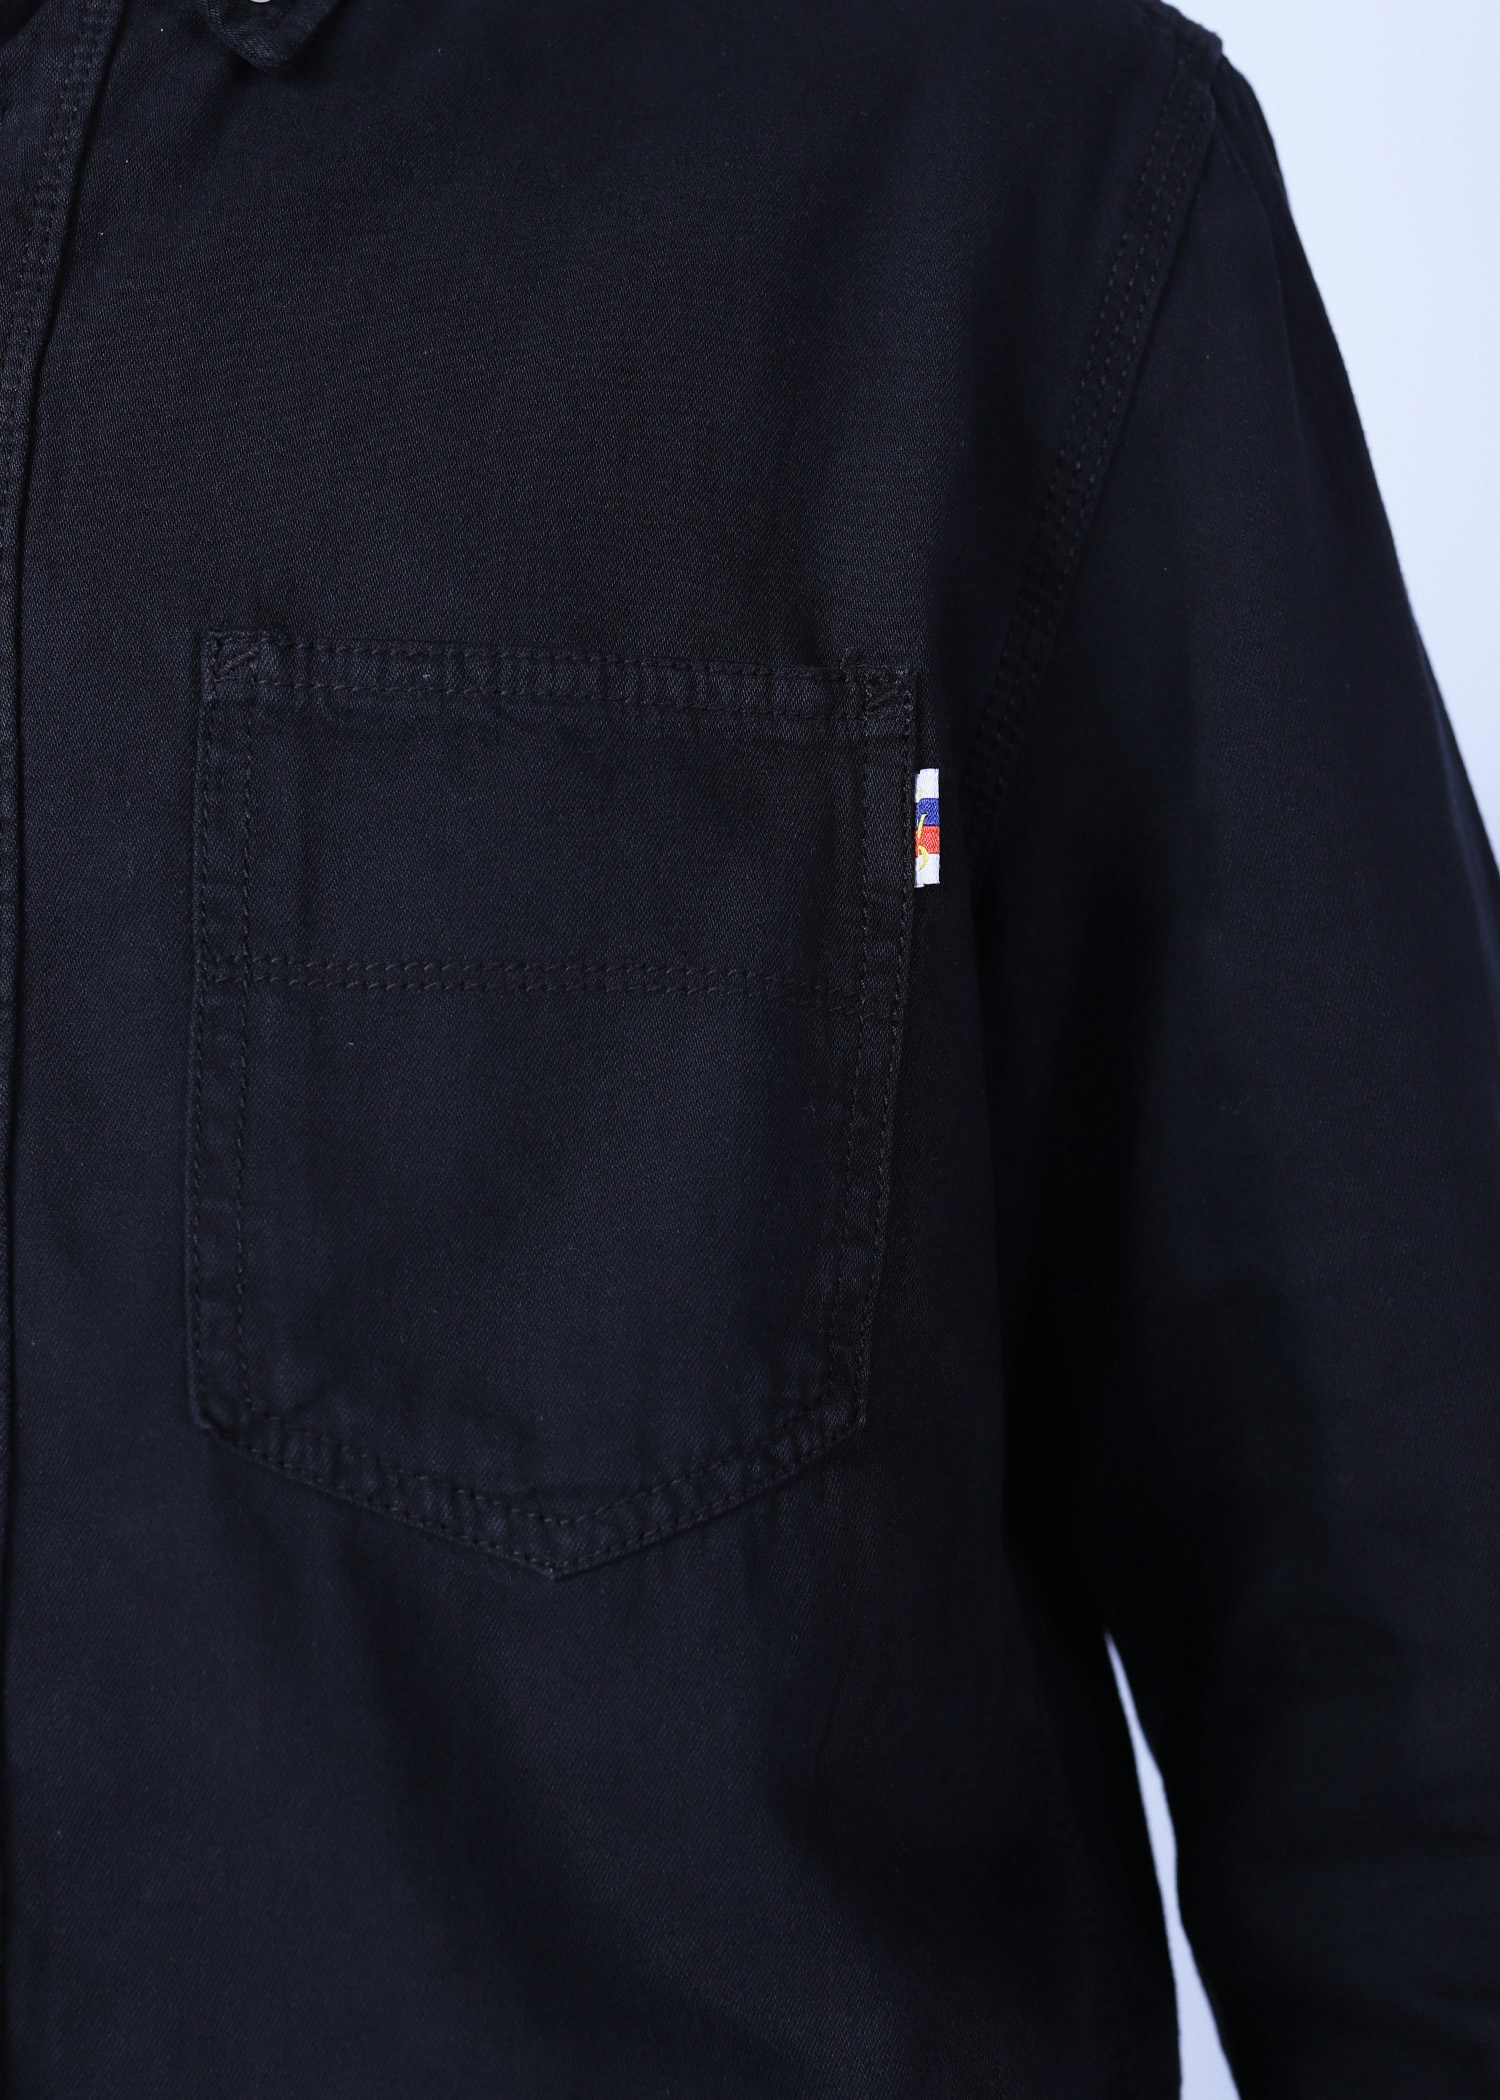 corsica v denim shirt black color close front view